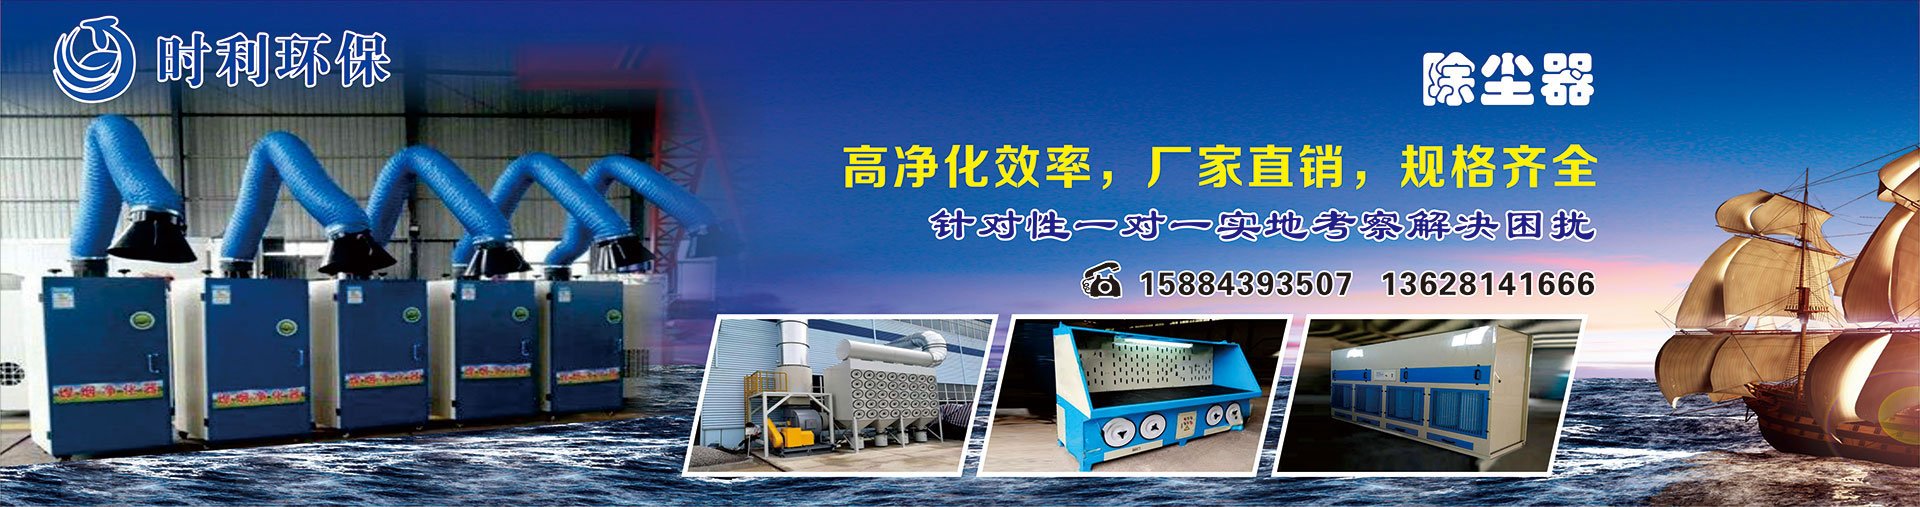 北京传博泰克工业装备技术有限公司
